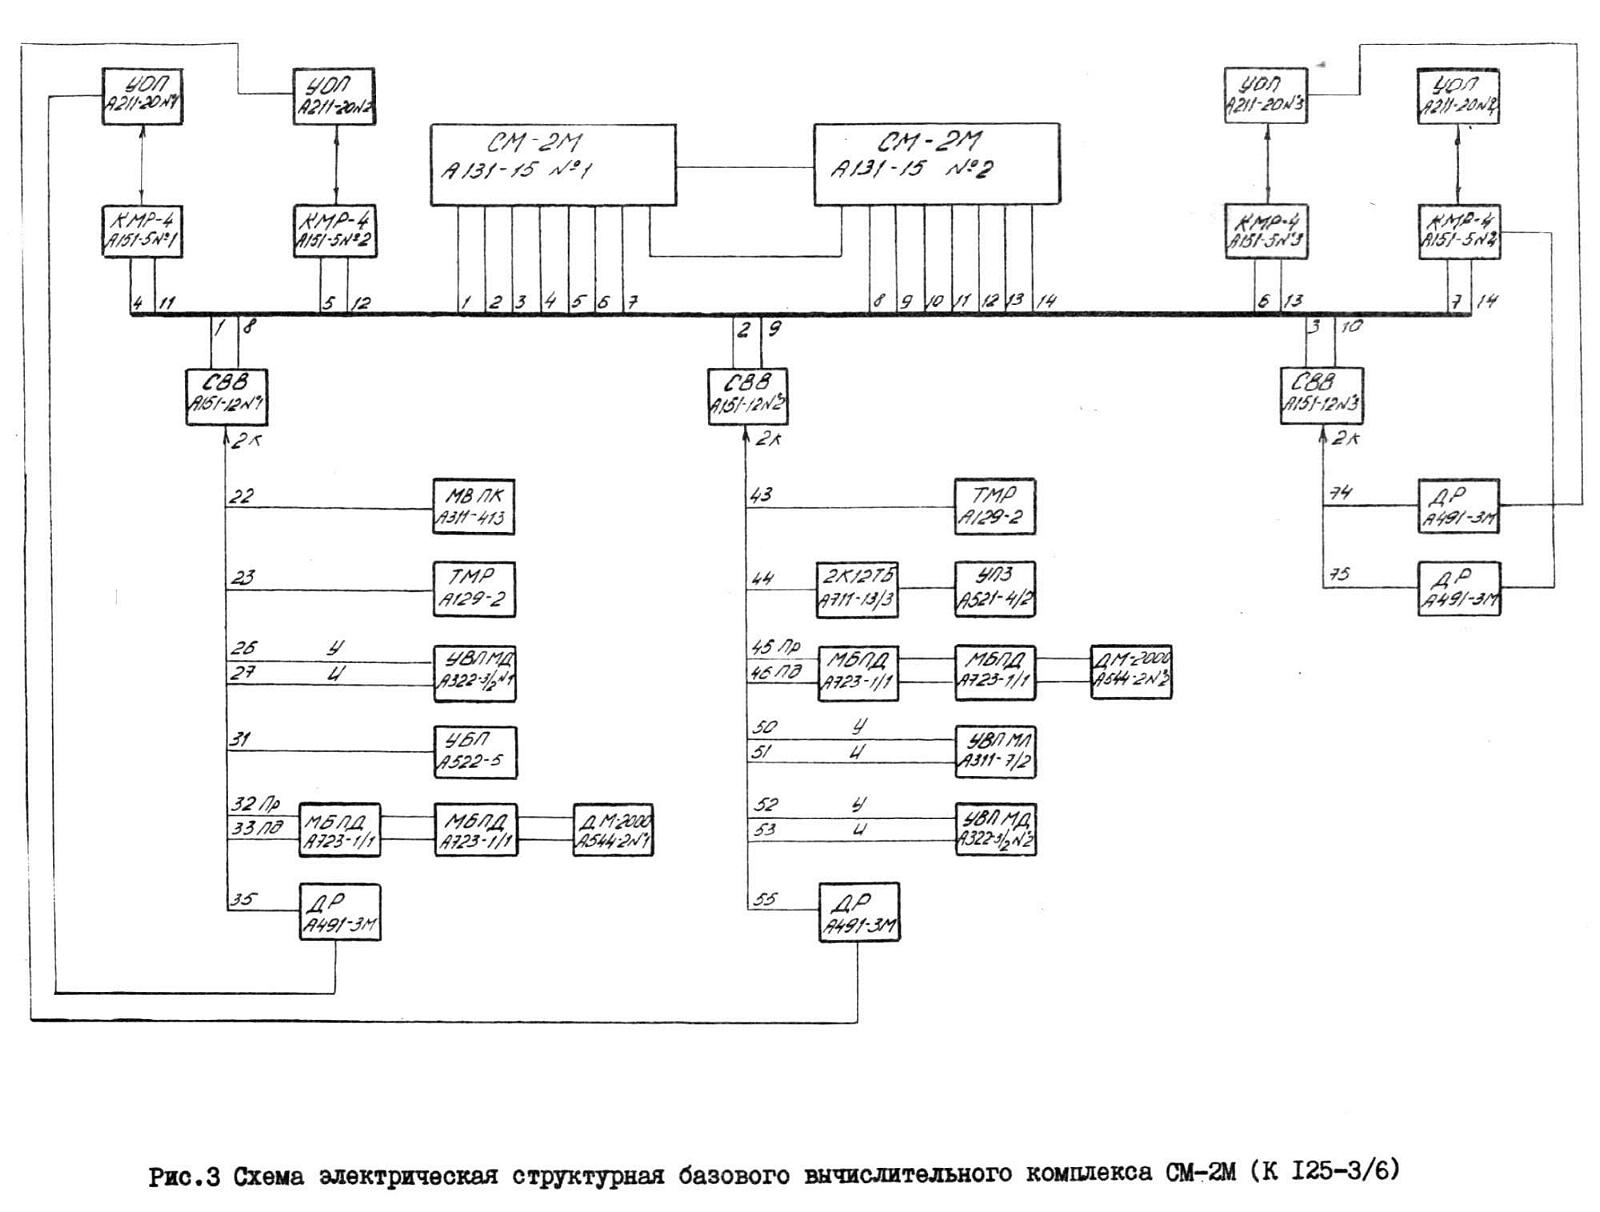 KKW Stendal, Katalog SU-Automatisierungstechnik, S. 13 